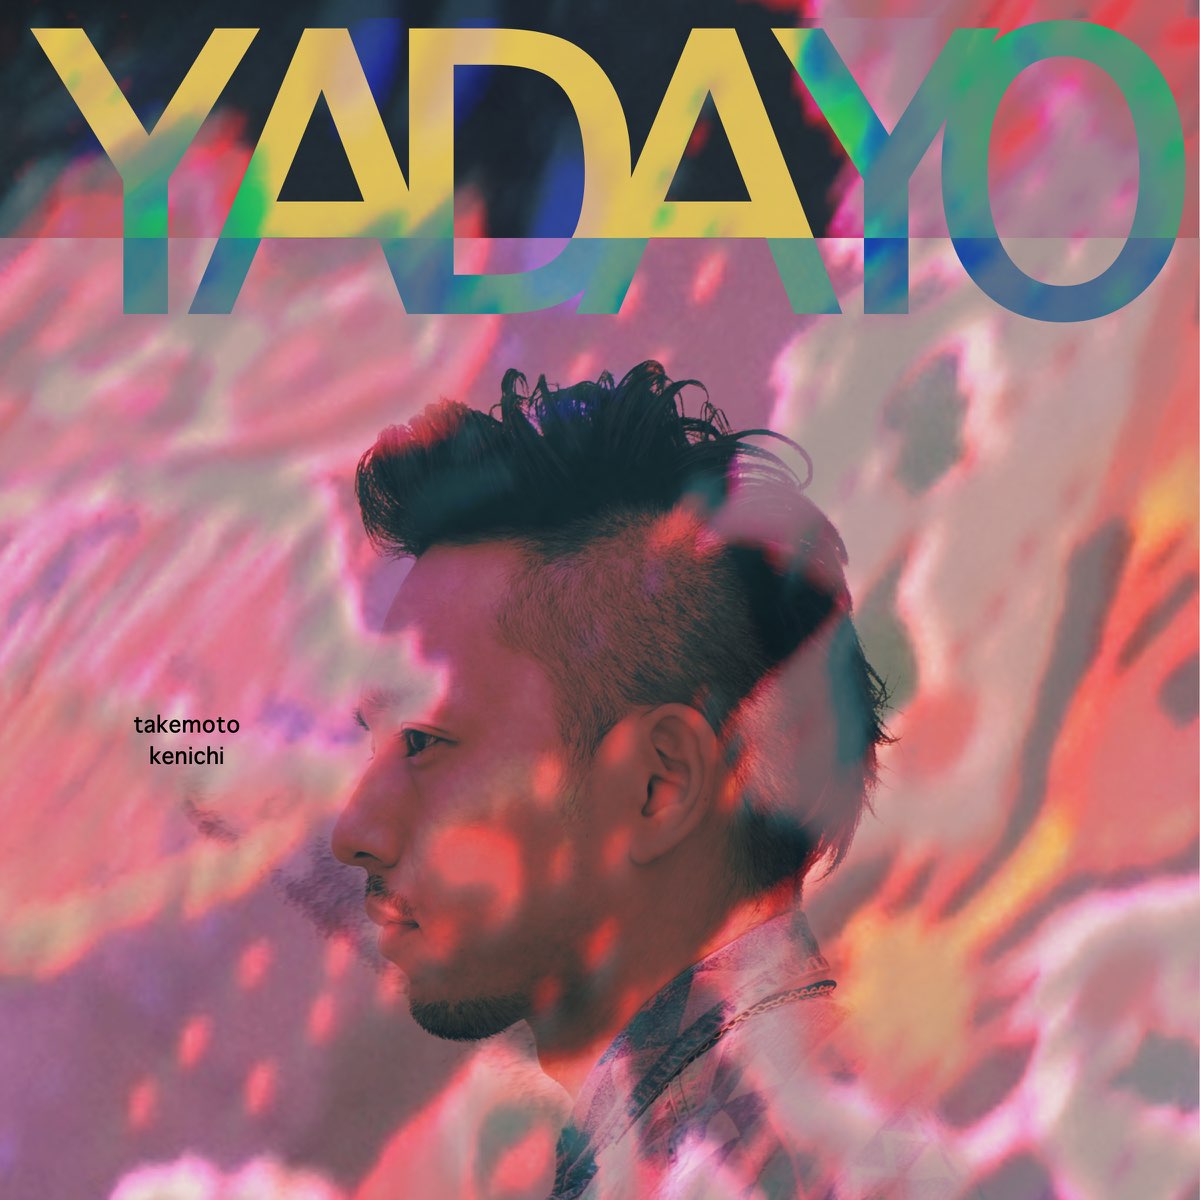 Yadayo - Album by Kenichi Takemoto - Apple Music